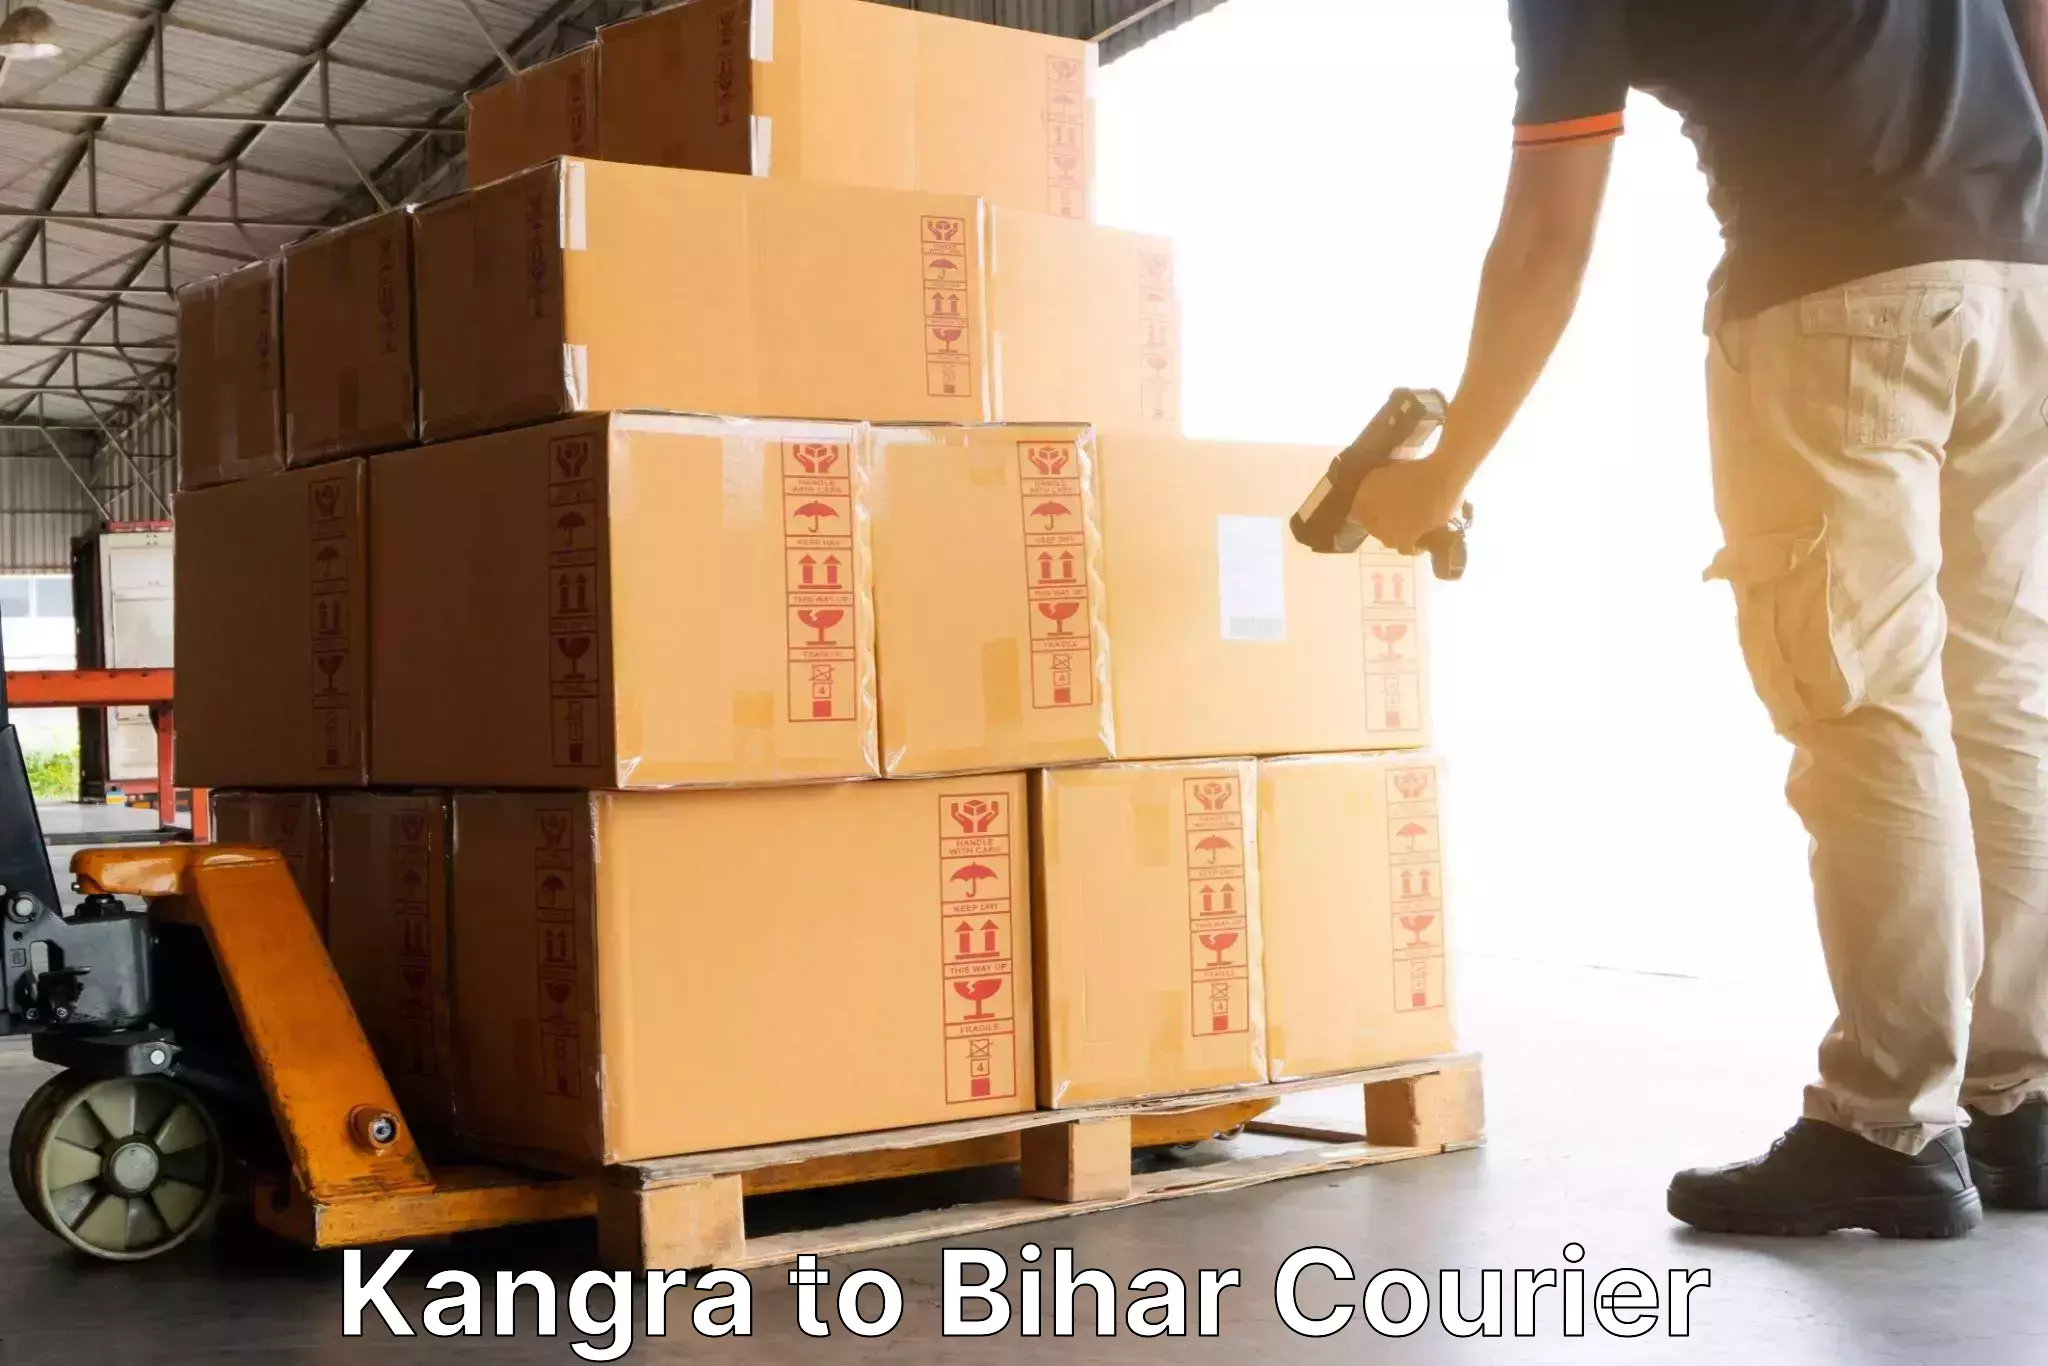 24-hour courier service Kangra to Mohiuddin Nagar